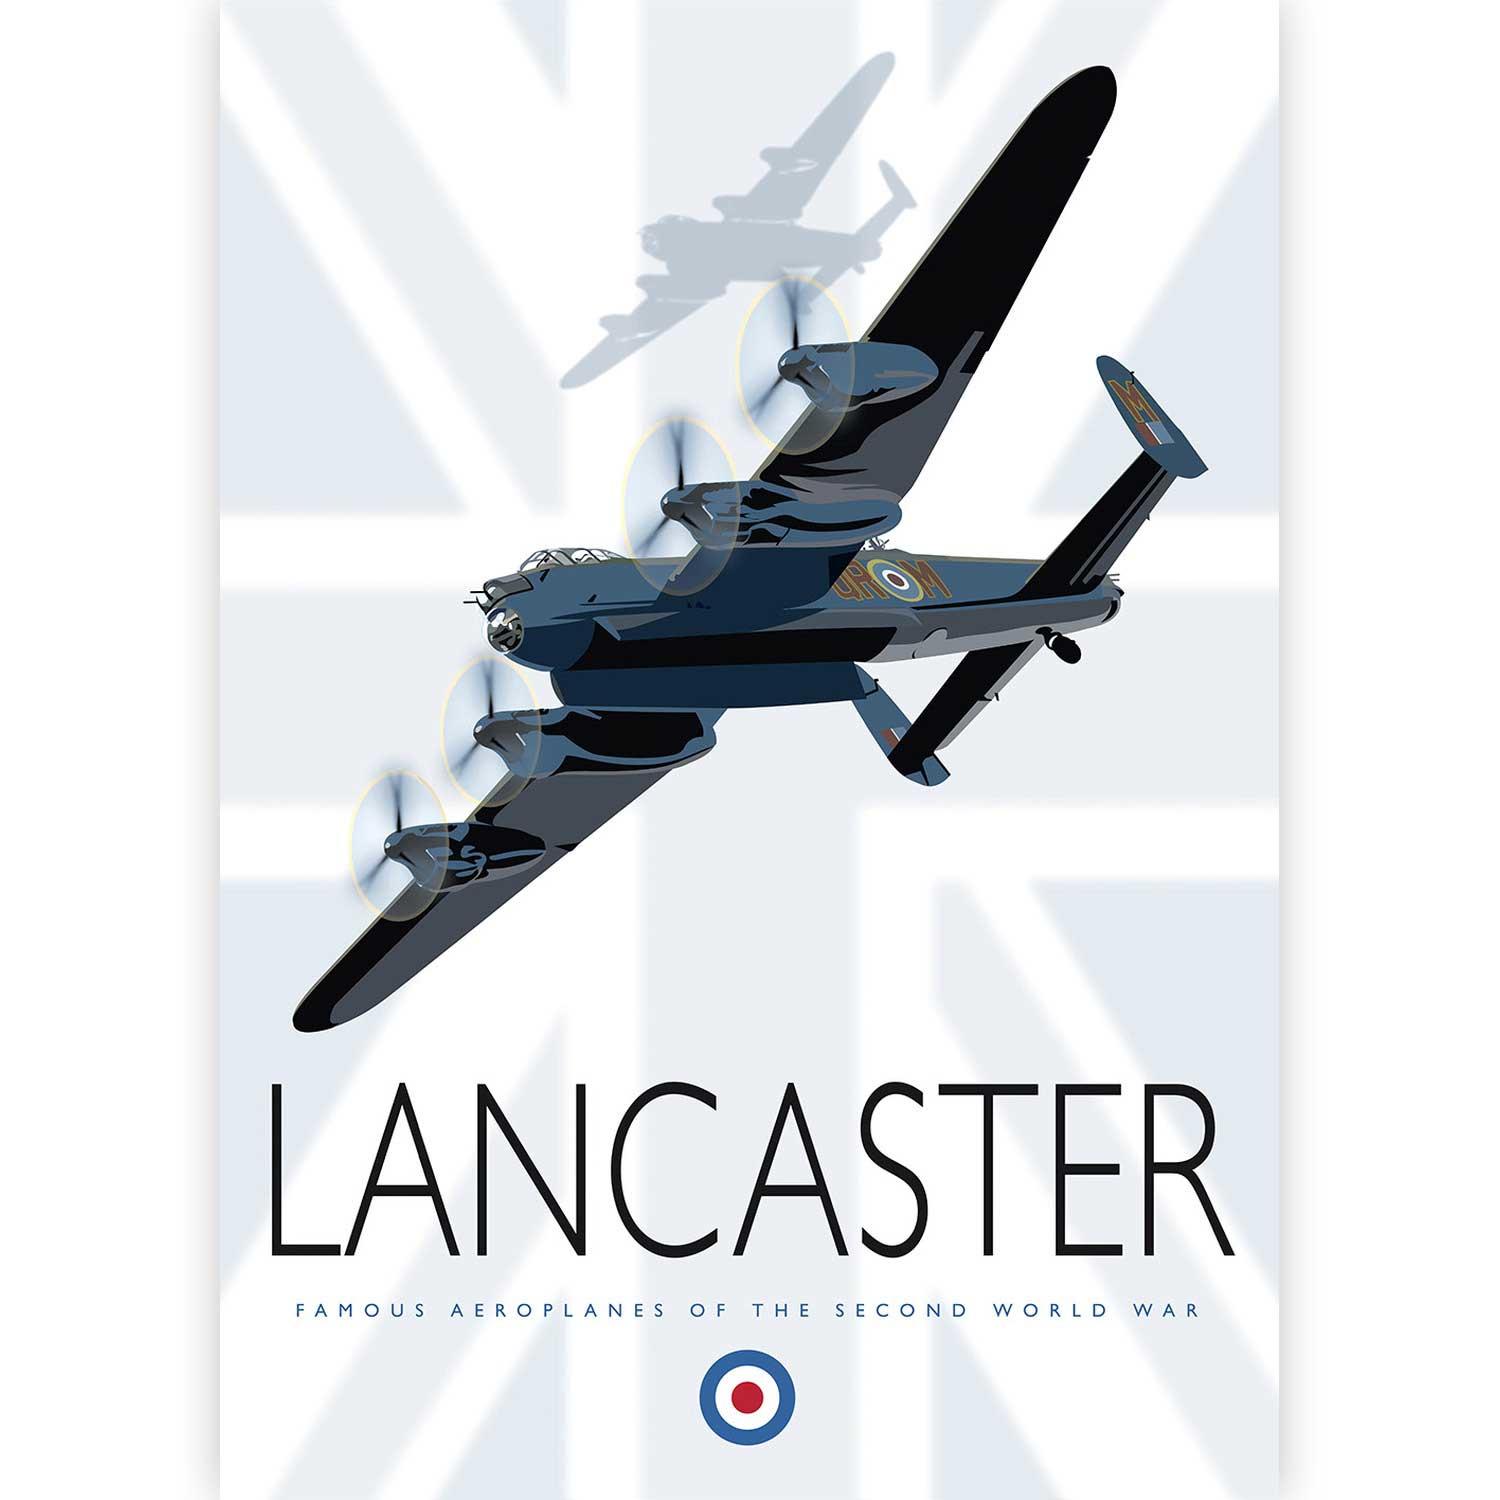 Lancaster by Peter McDermott